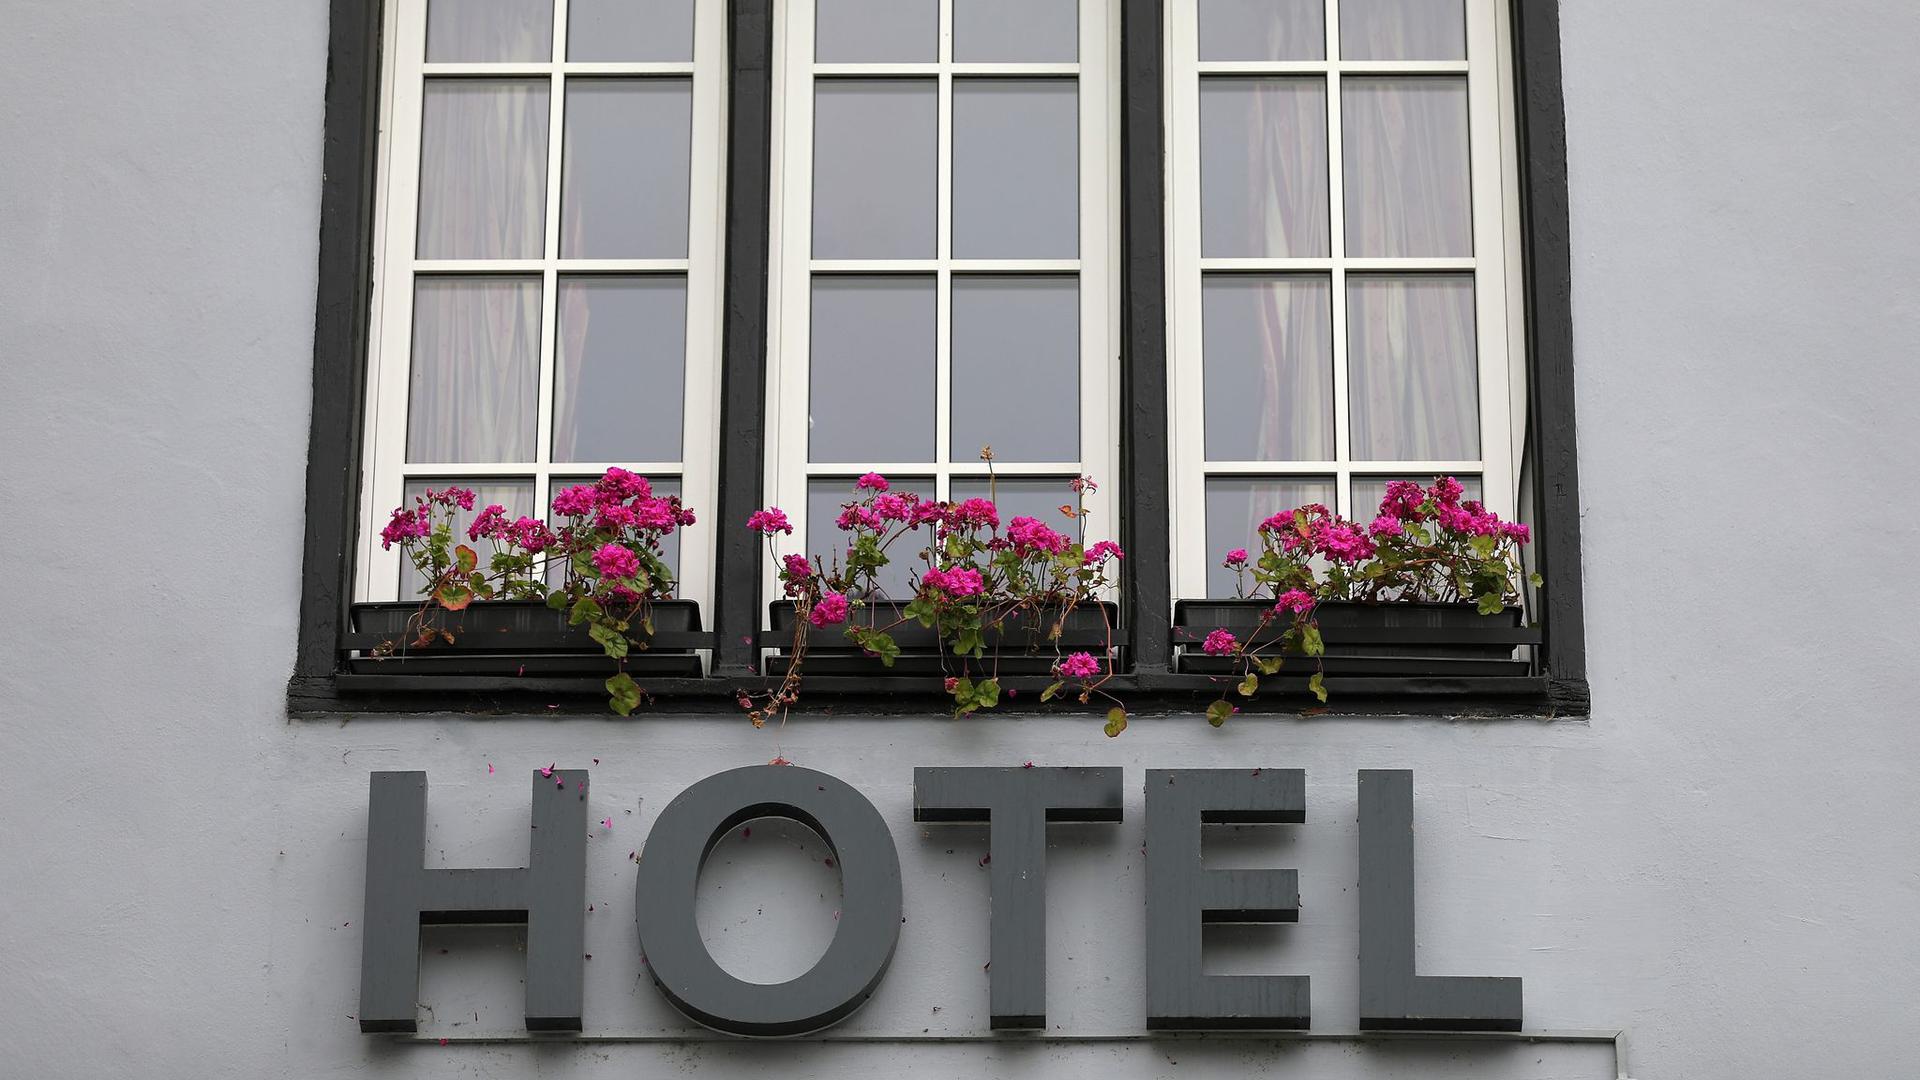 Besorgt über den Rückgang an Buchungen: Besonders an vereinzelten Beherbungsverboten für Gäste aus innerdeutschen Risikogebieten nehmen Hotels und Wirtschaftsverbände Anstoß.